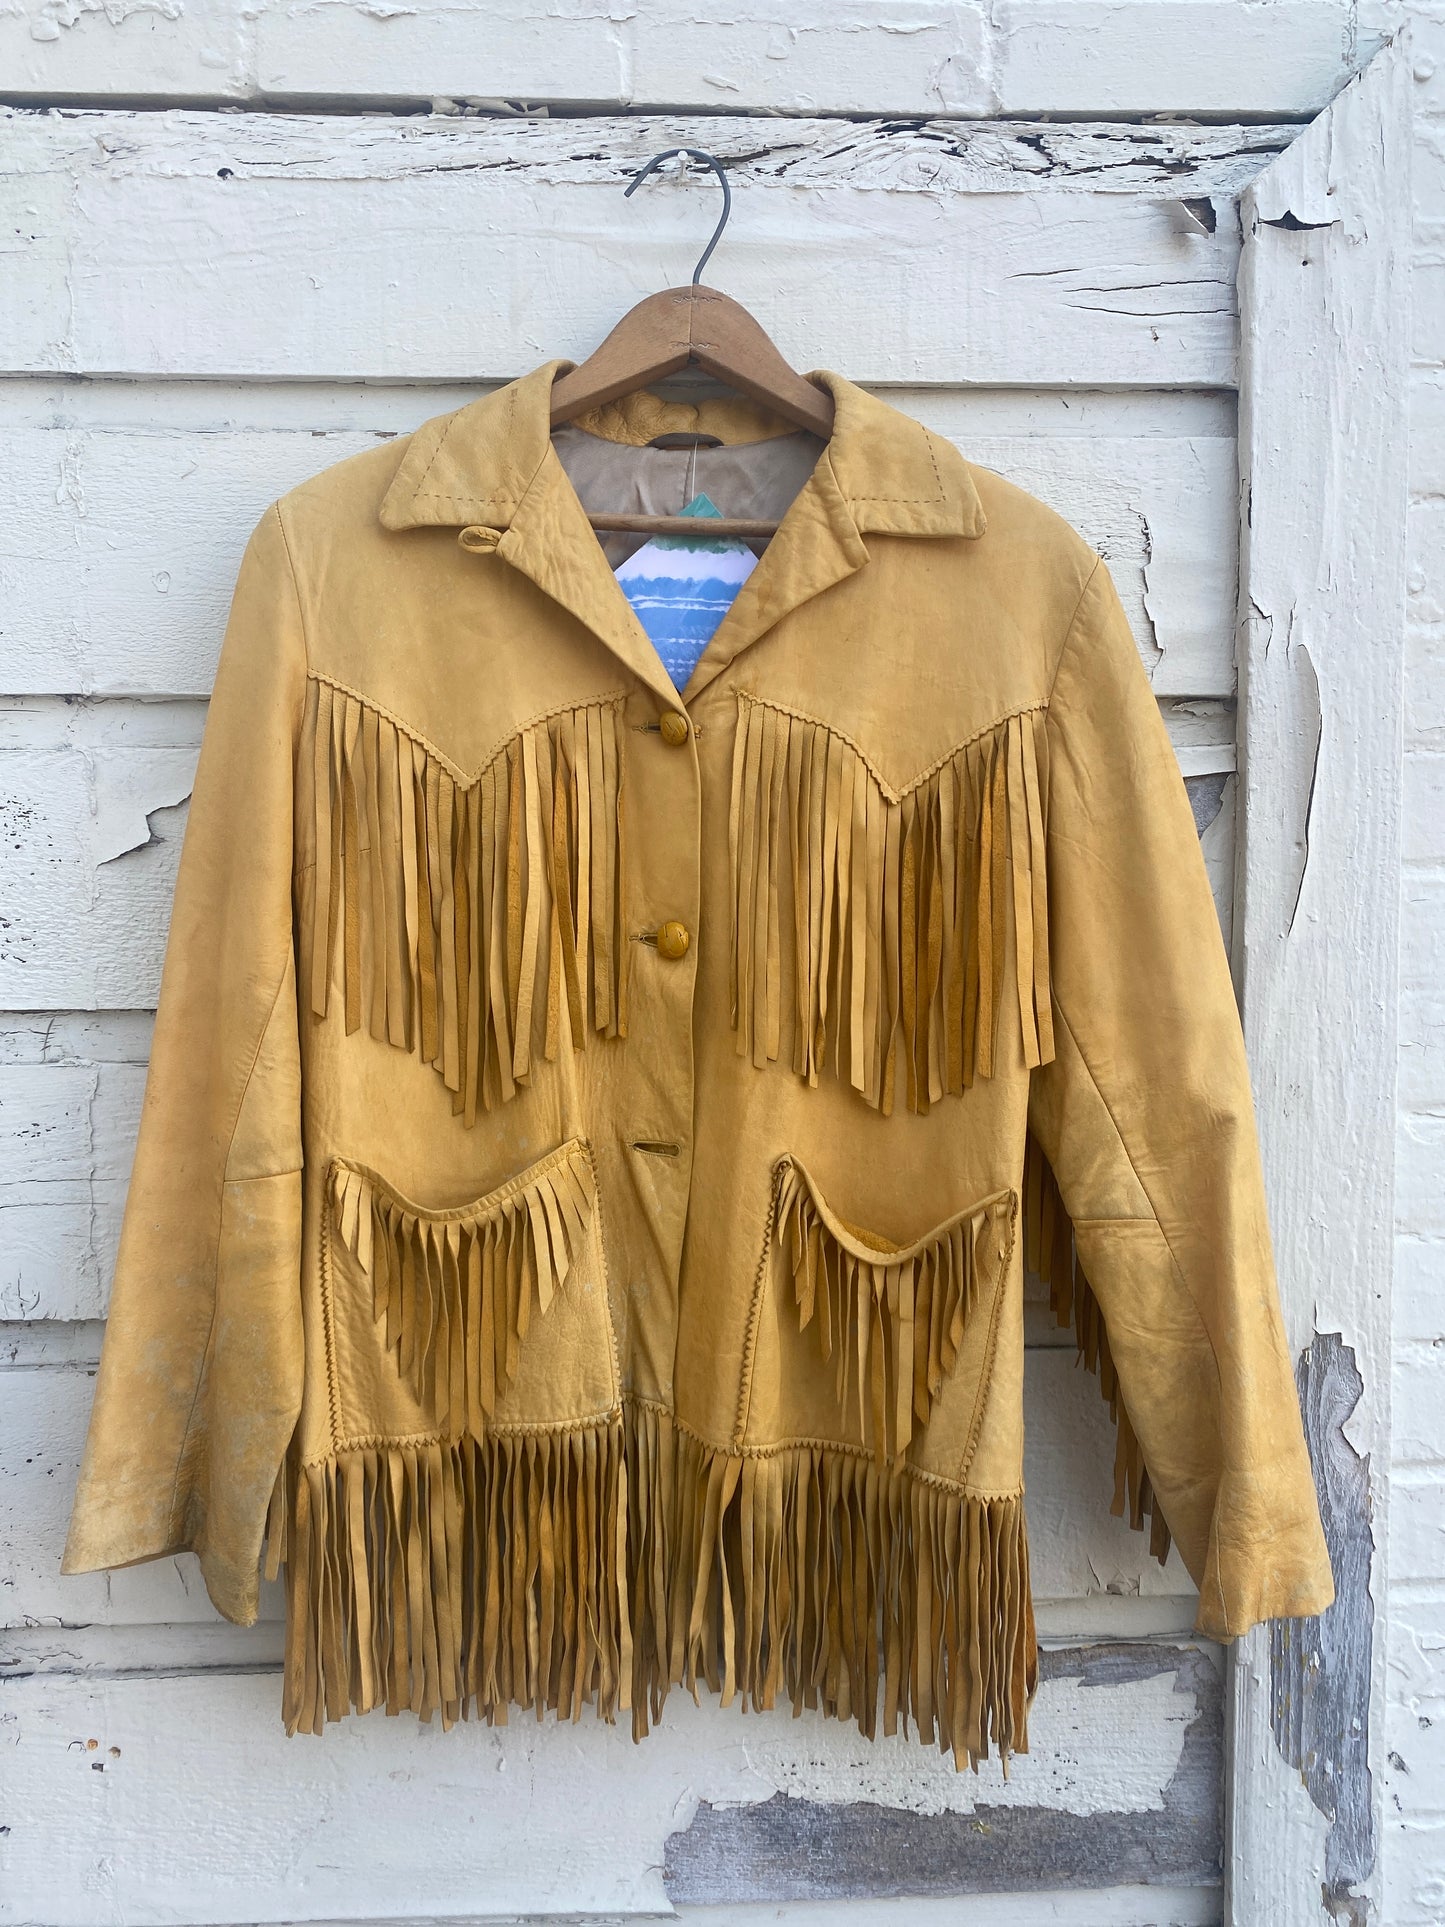 Vintage 50s/60s fringe soft leather jacket small/medium